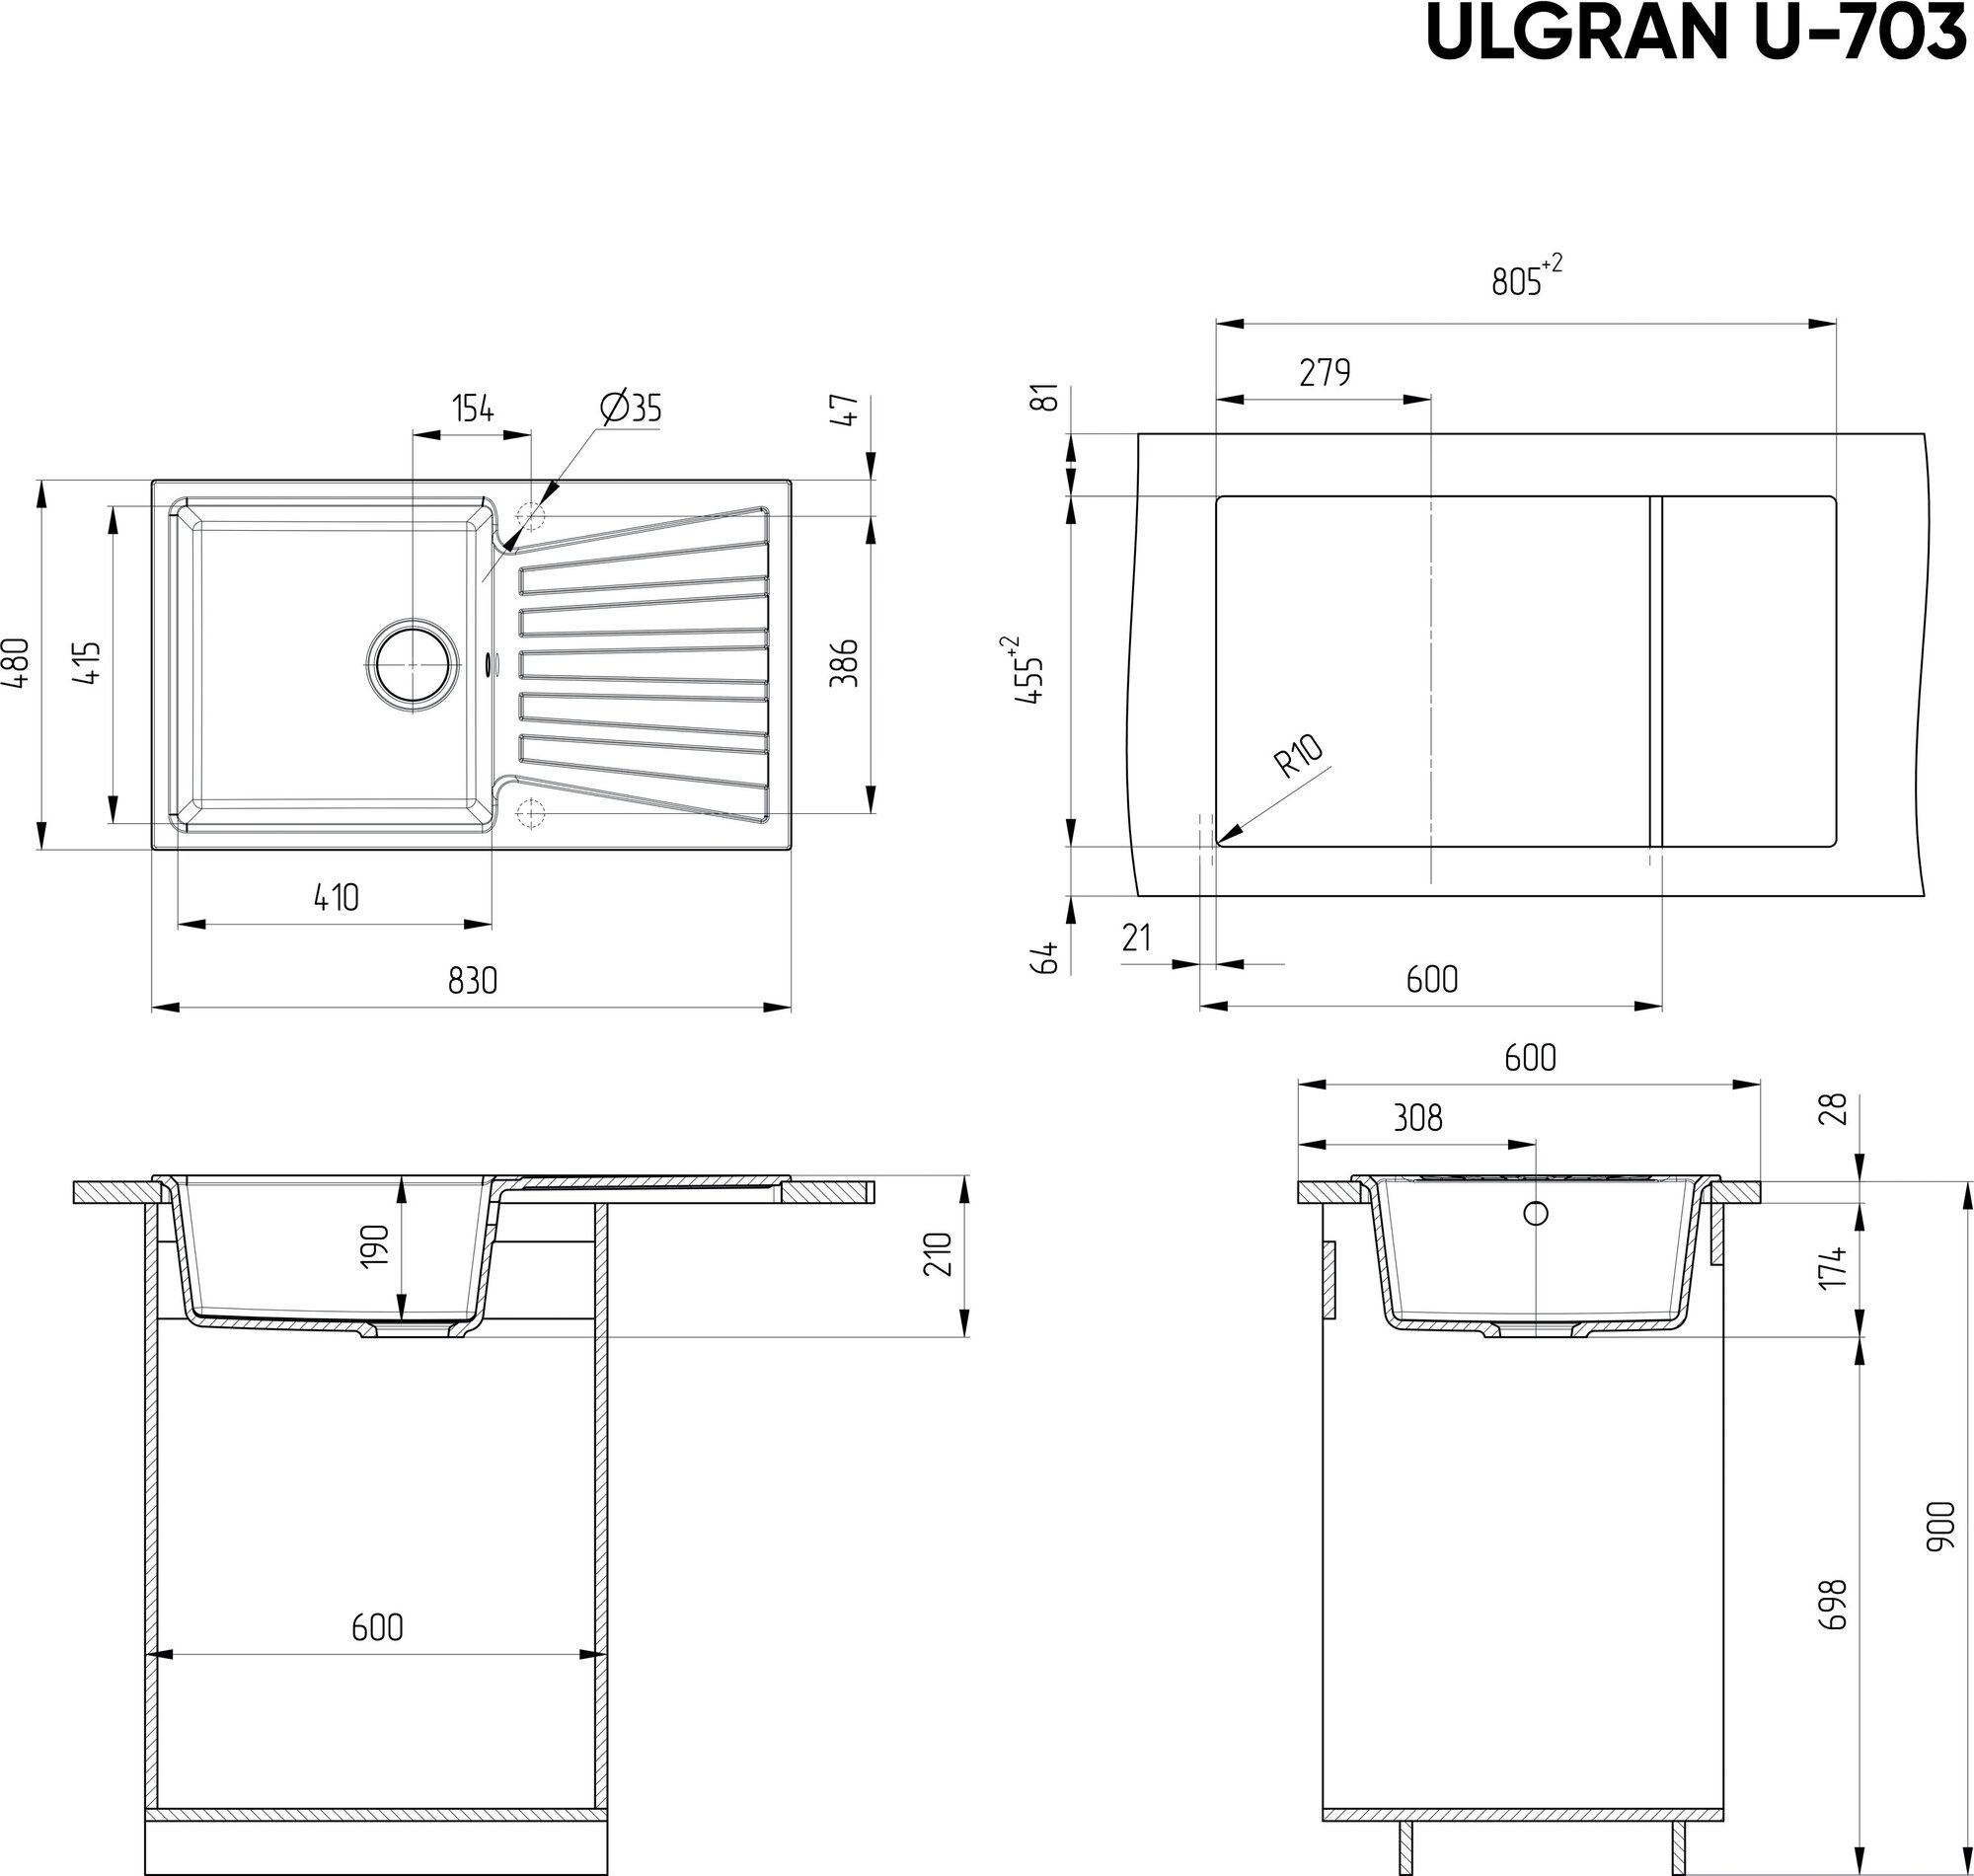 Мойка кухонная Ulgran U-703 -309 темно-серая U-703-309 - фотография № 2